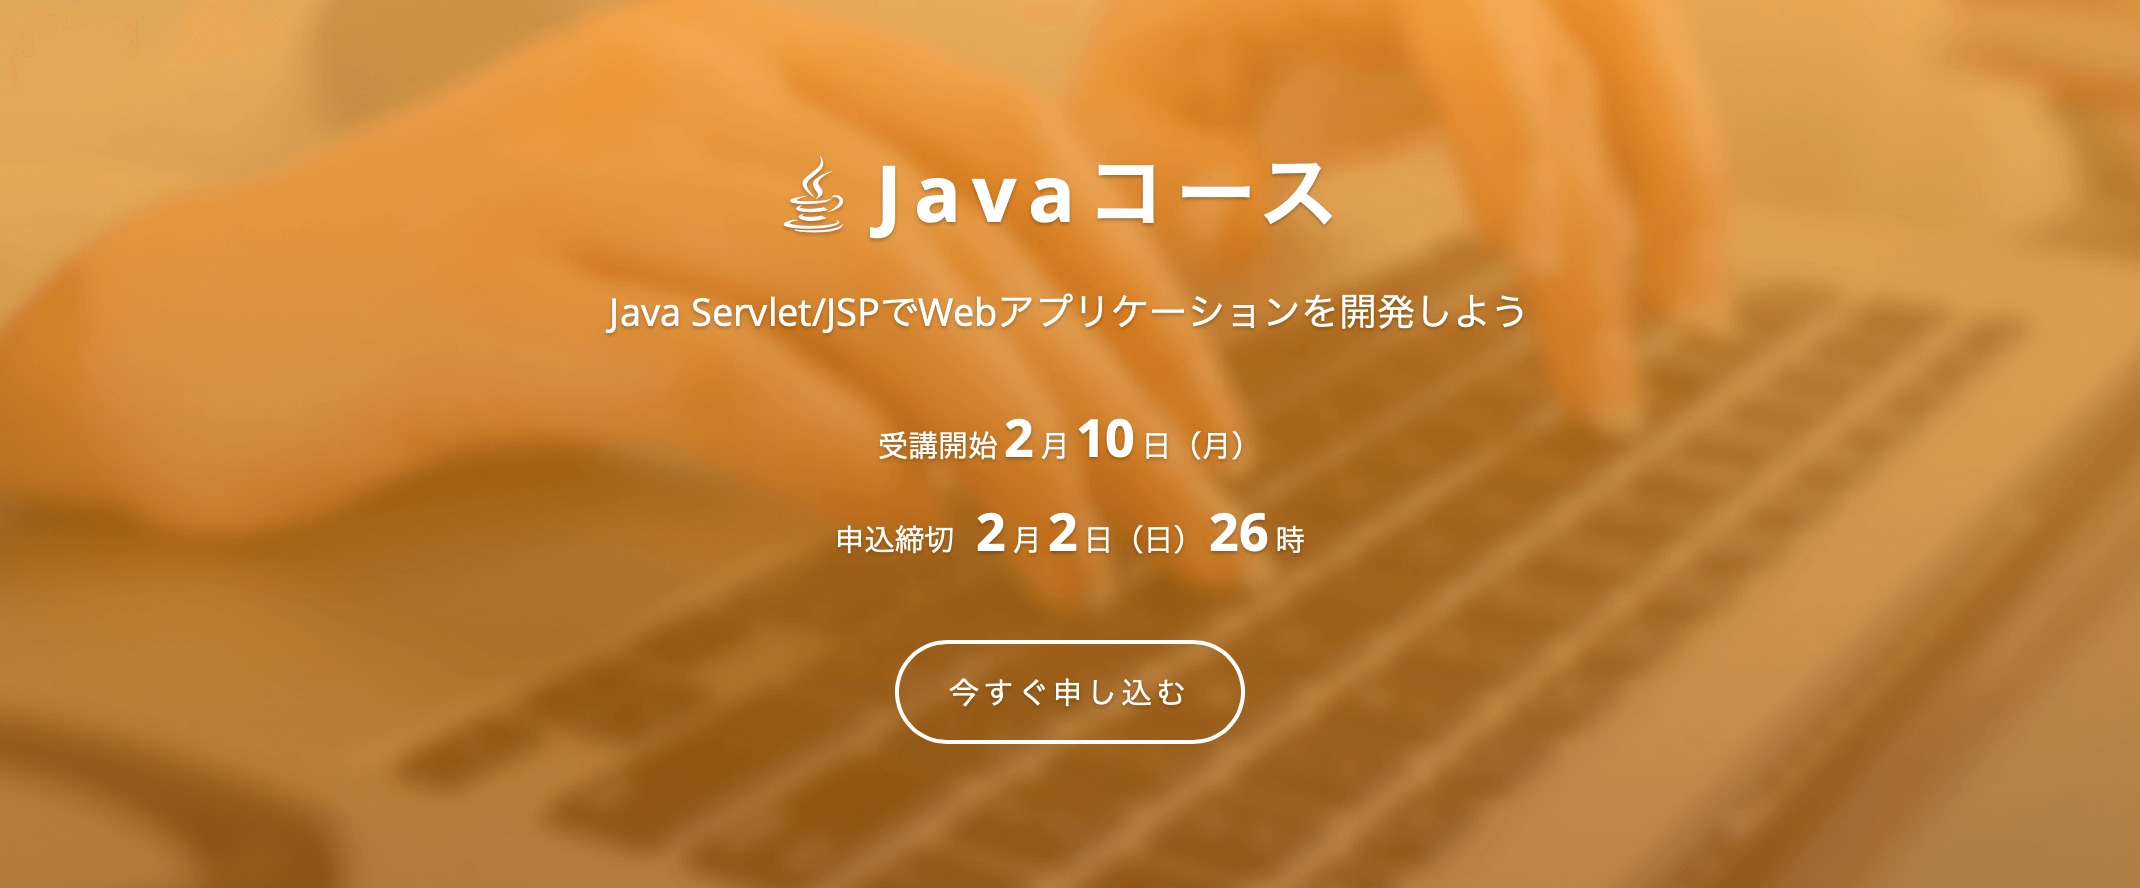 Javaが学べるプログラミングスクールTOP5【現役エンジニア厳選】